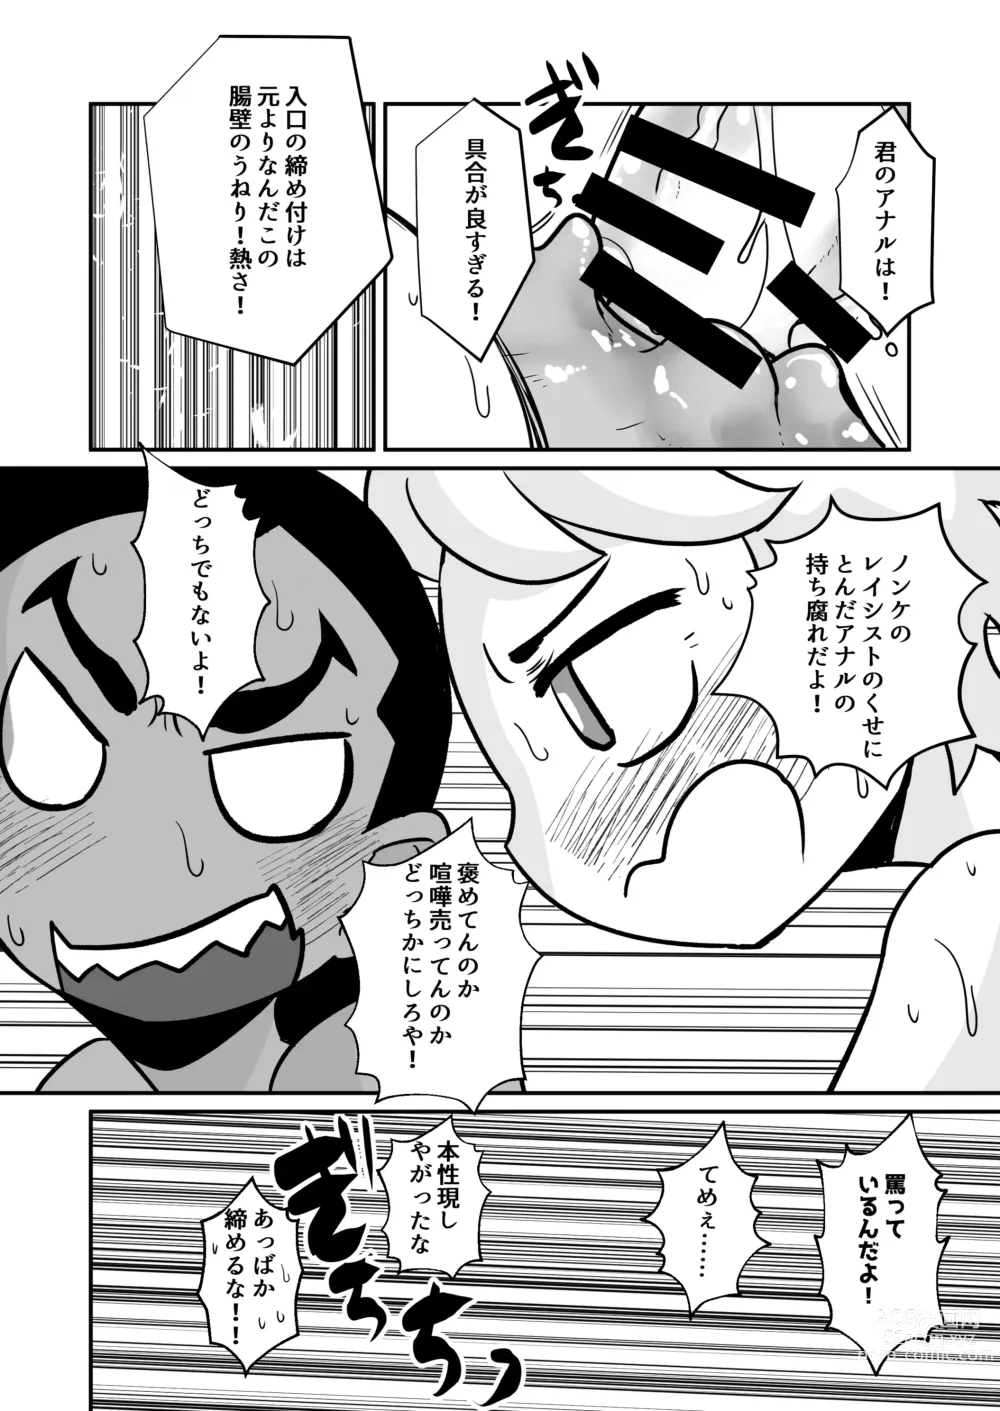 Page 67 of doujinshi Seiyoku no Hanashi.